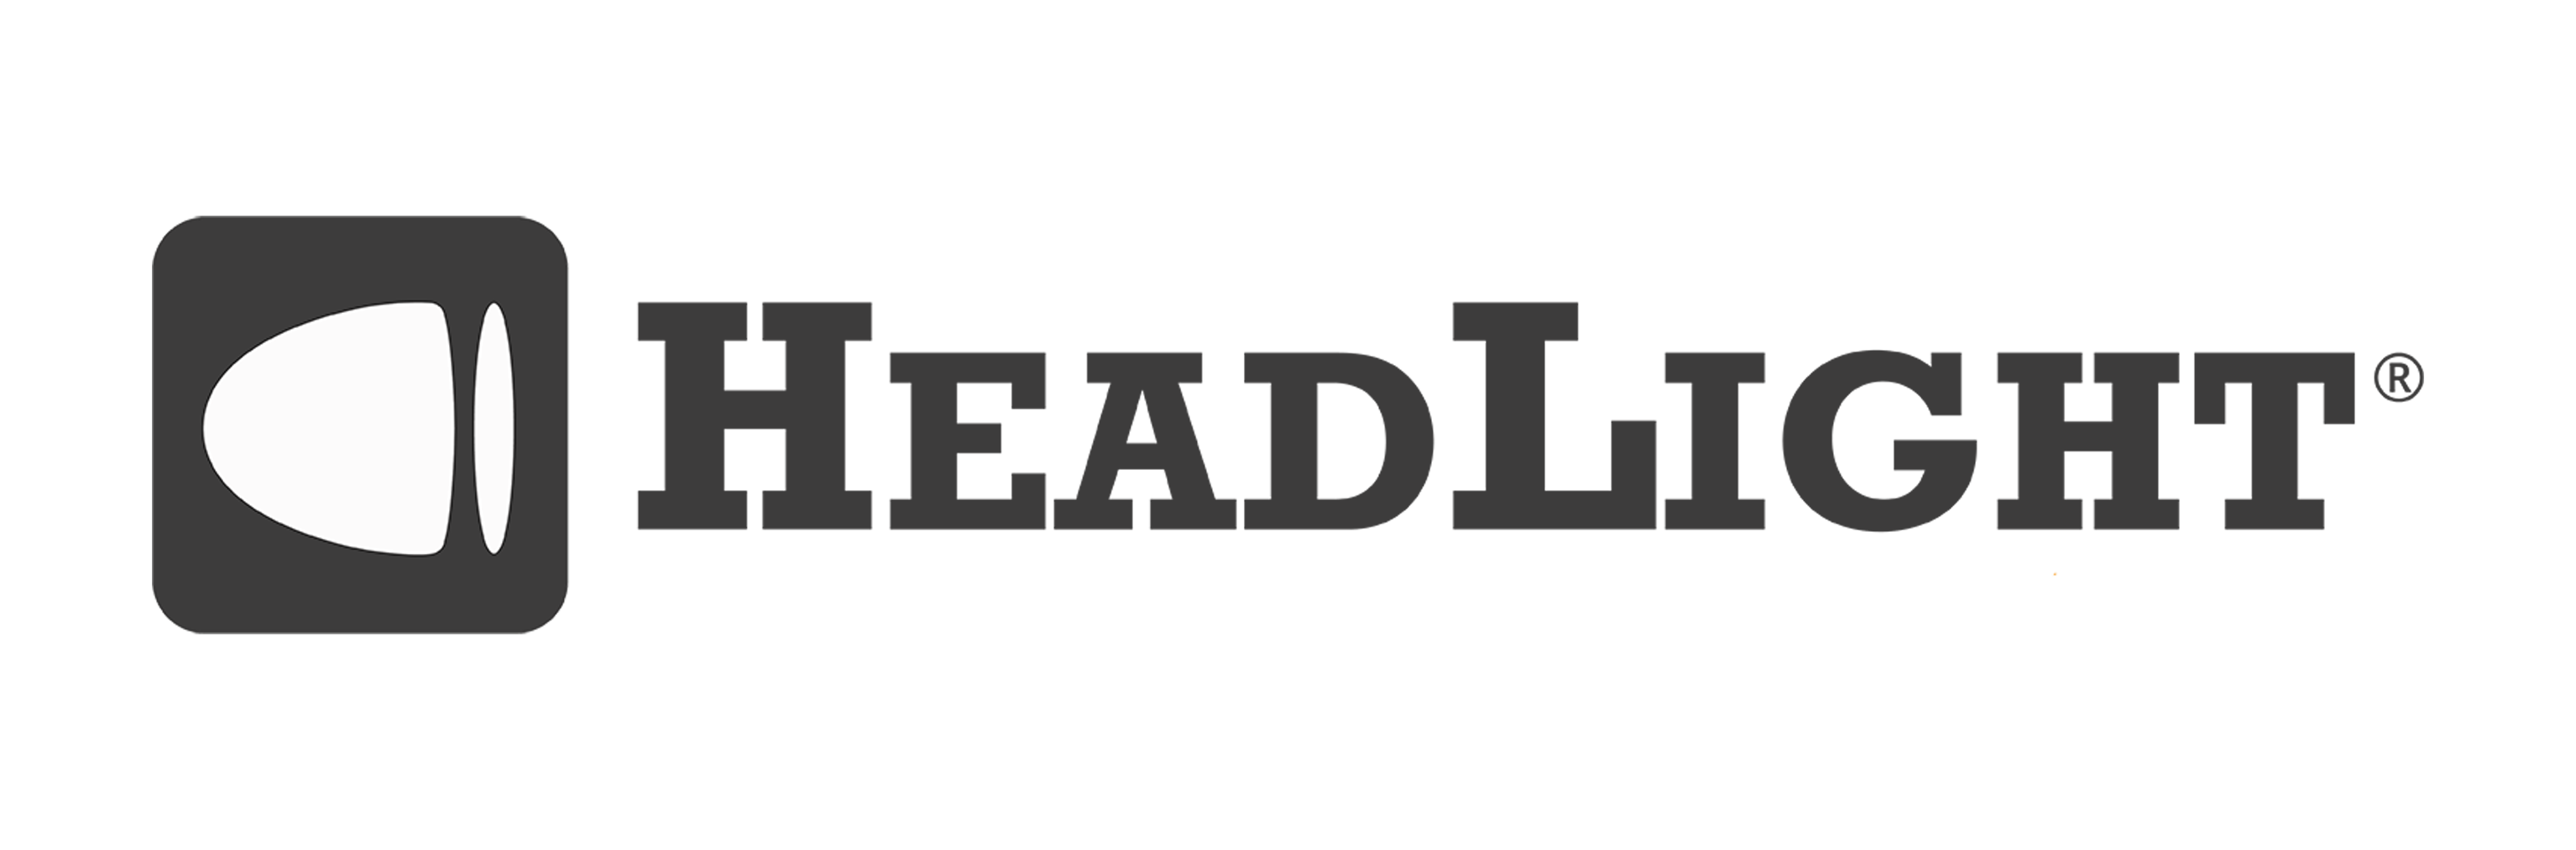 logo for headlight